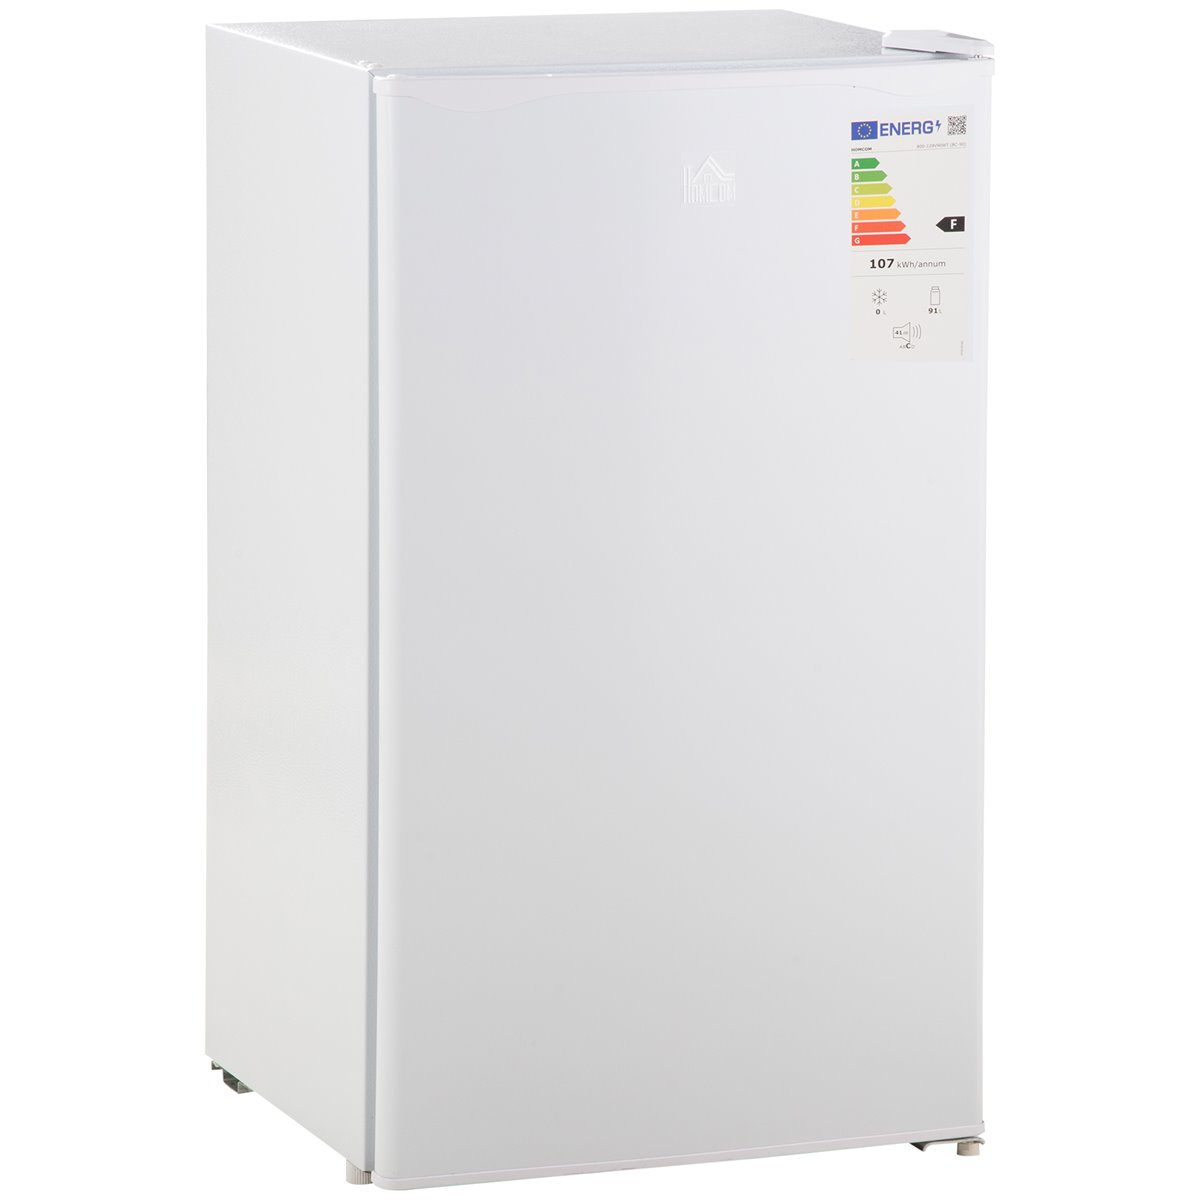 HOMCOM Mini Refrigerador 91L de Capacidad Nevera Eléctrica Pequeña con  Estante Ajustable Compartimento Congelador y Puerta Reversible Silencioso  41dB 47,5x44.2x84 cm Blanco - Conforama